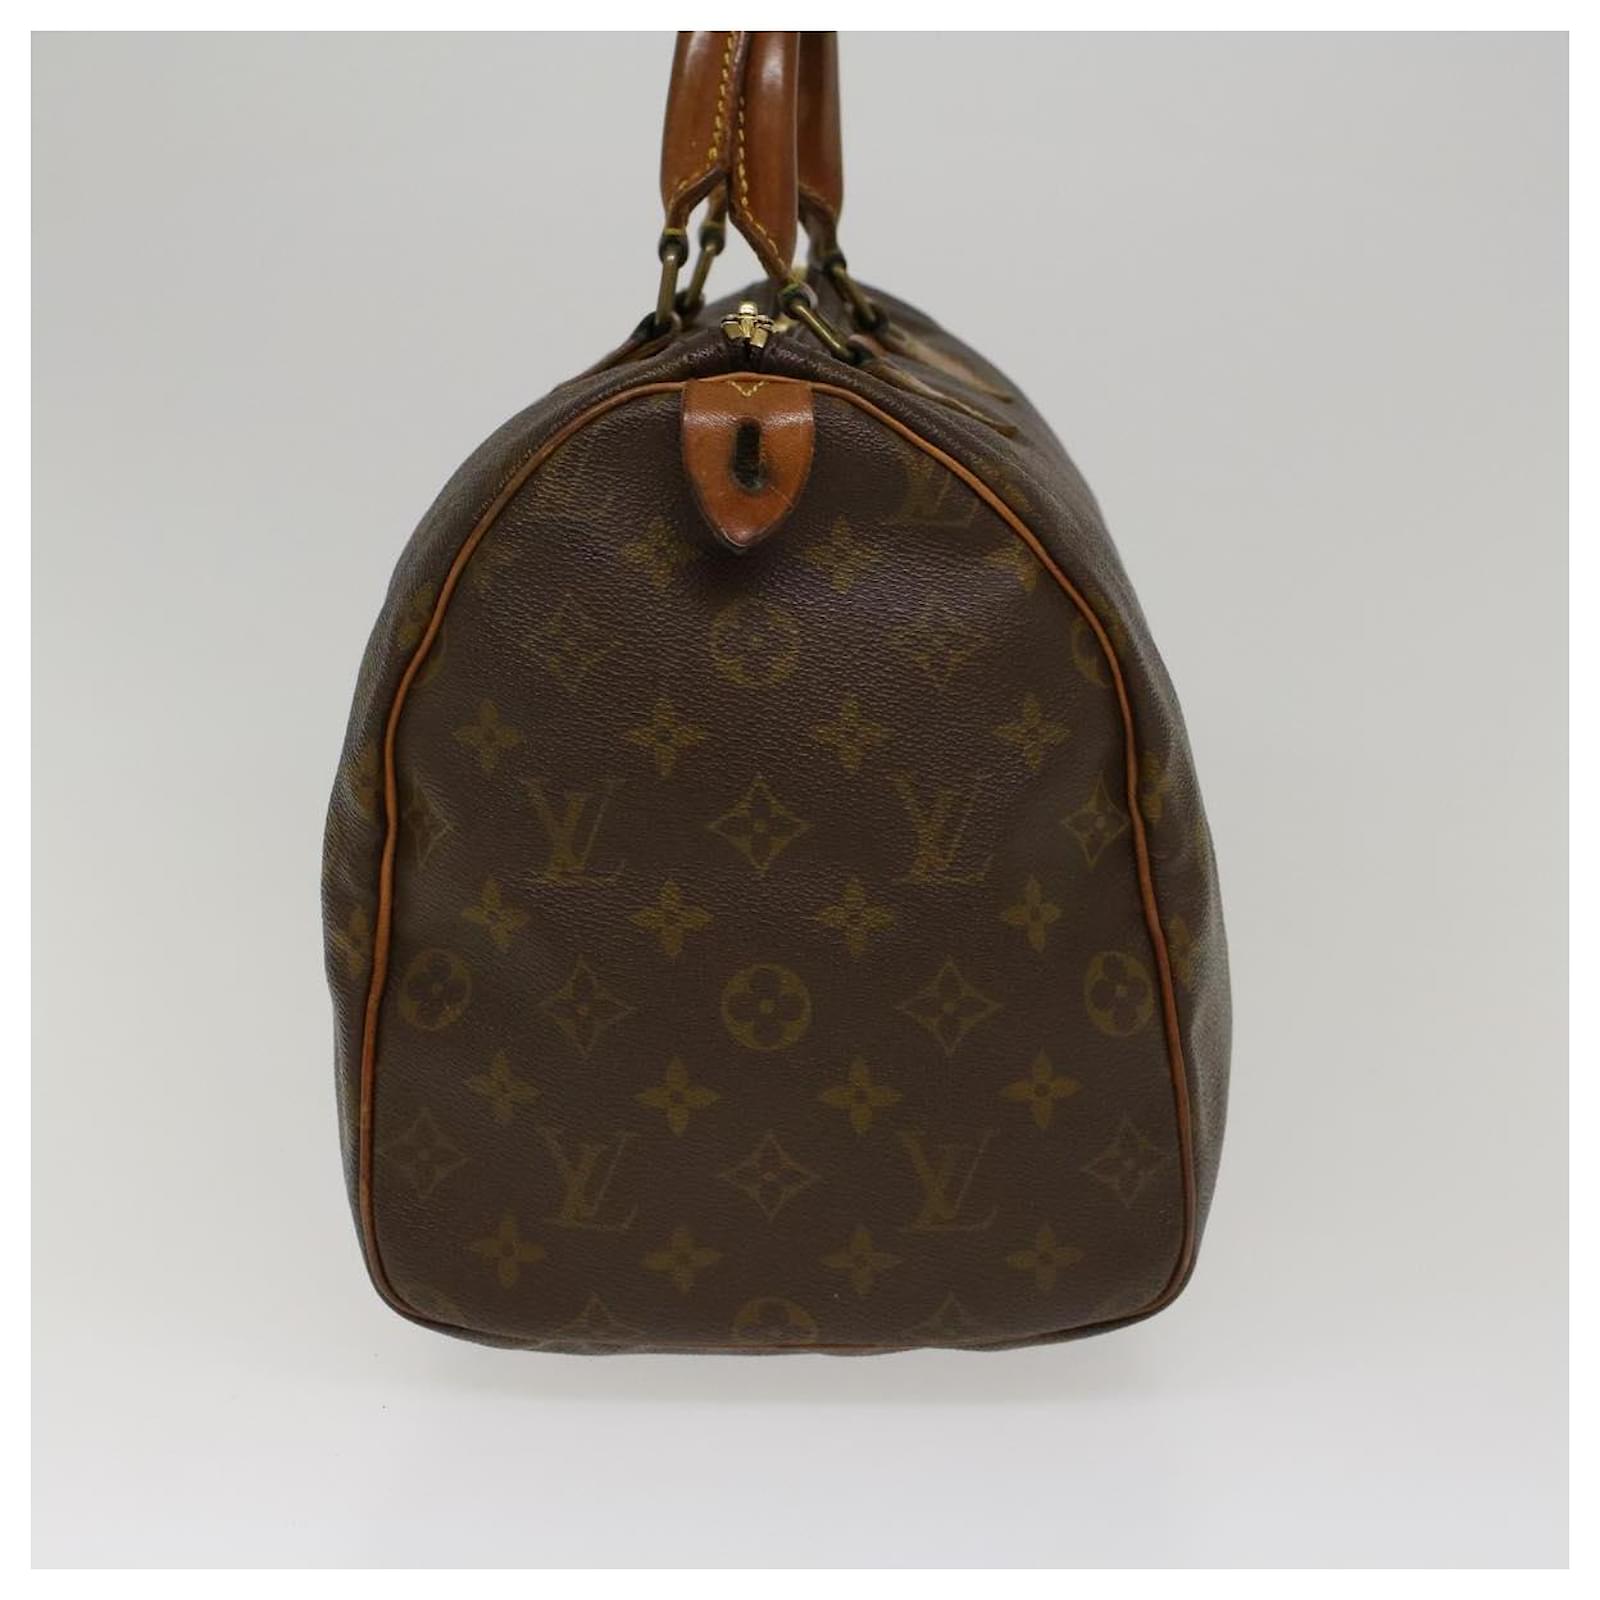 Louis Vuitton, Bags, Auth Vintage Louis Vuitton Speedy 4